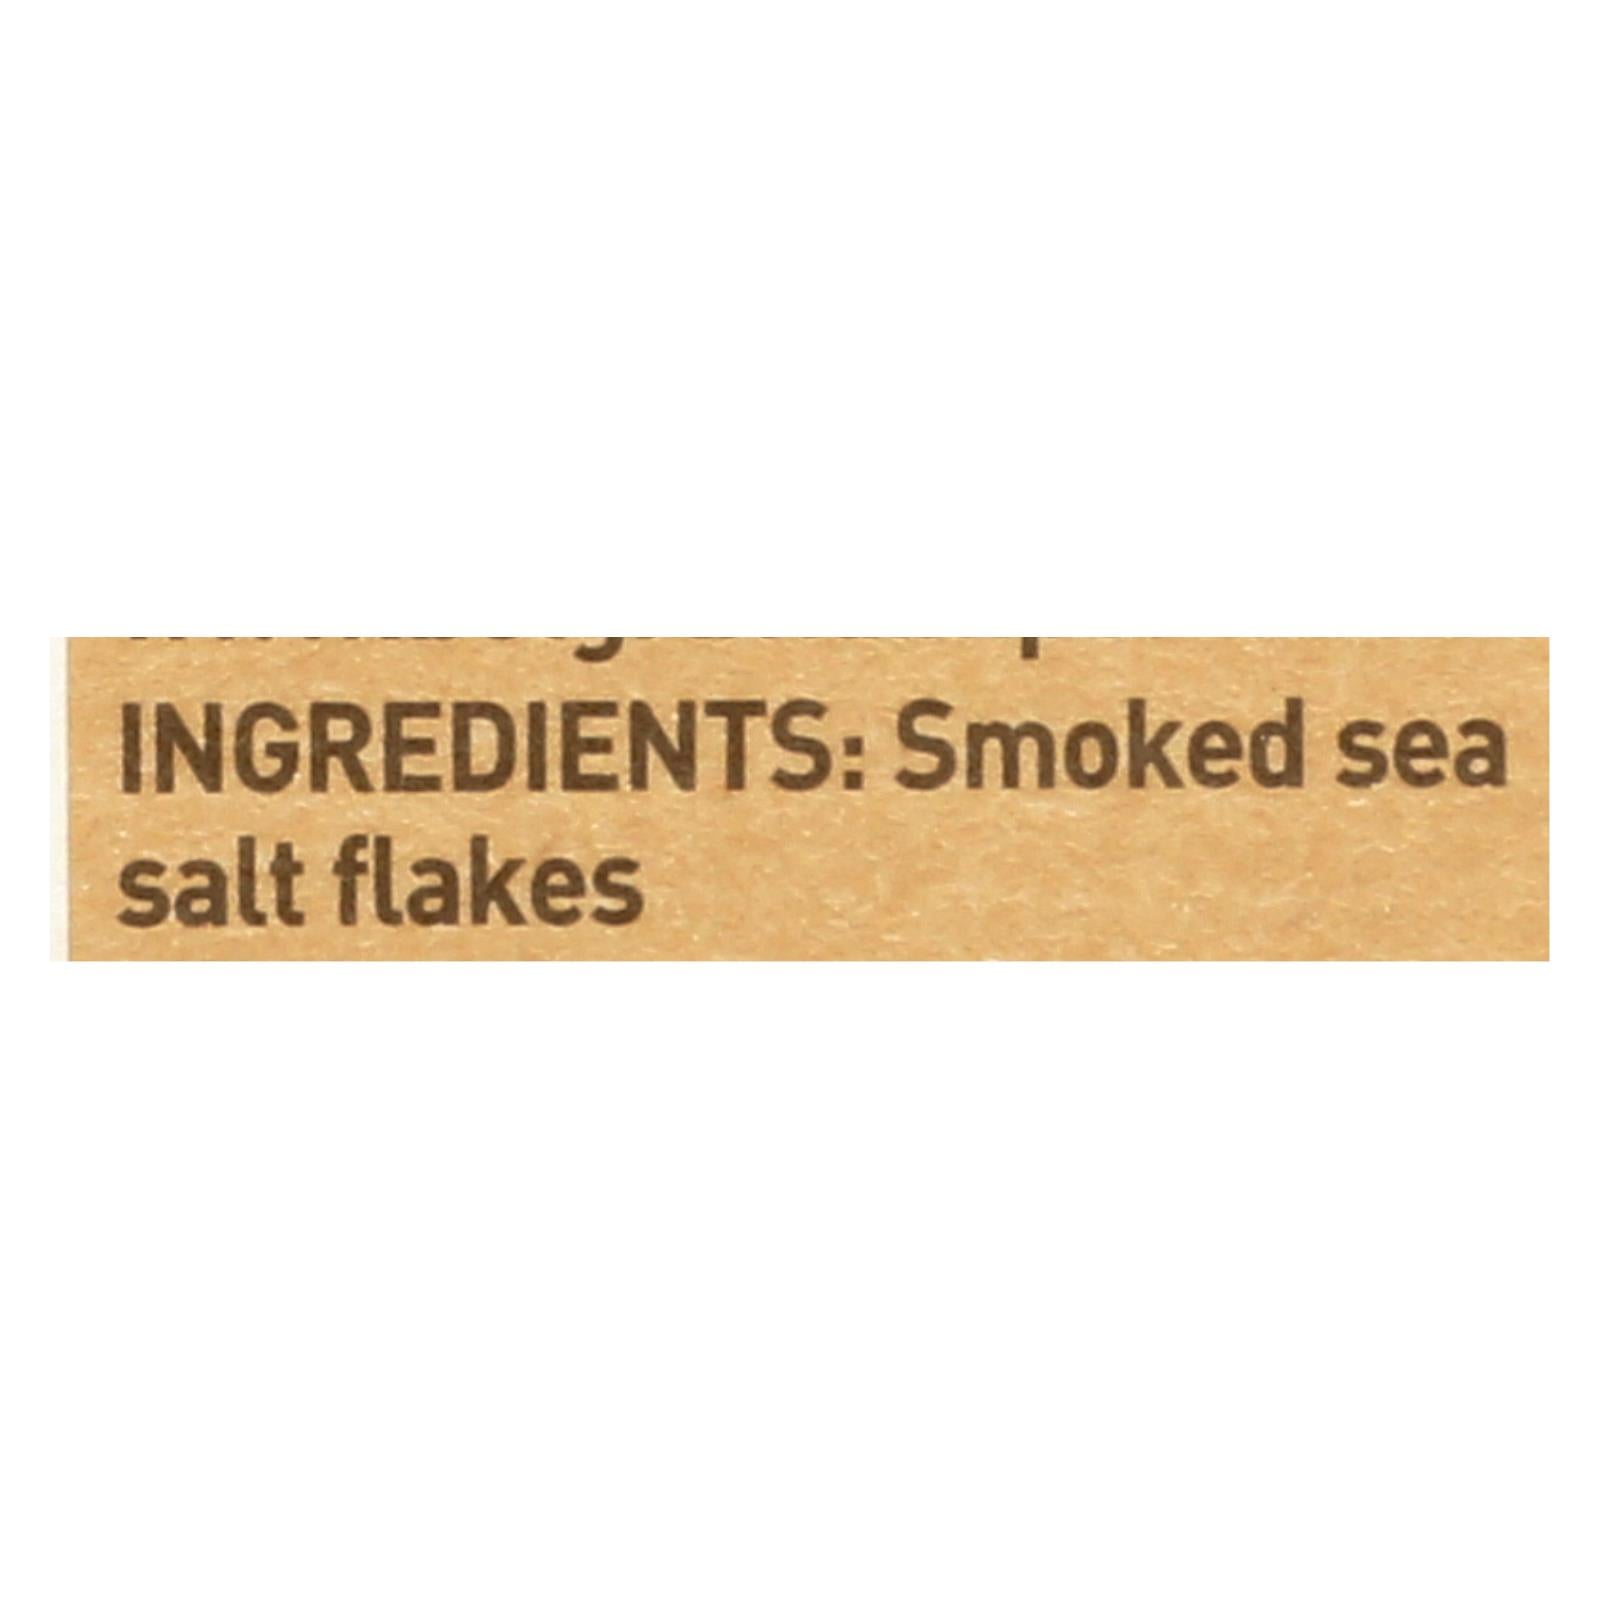 Maldon Flakes - Smoked Sea Salt - Case Of 6 - 4.4 Oz.